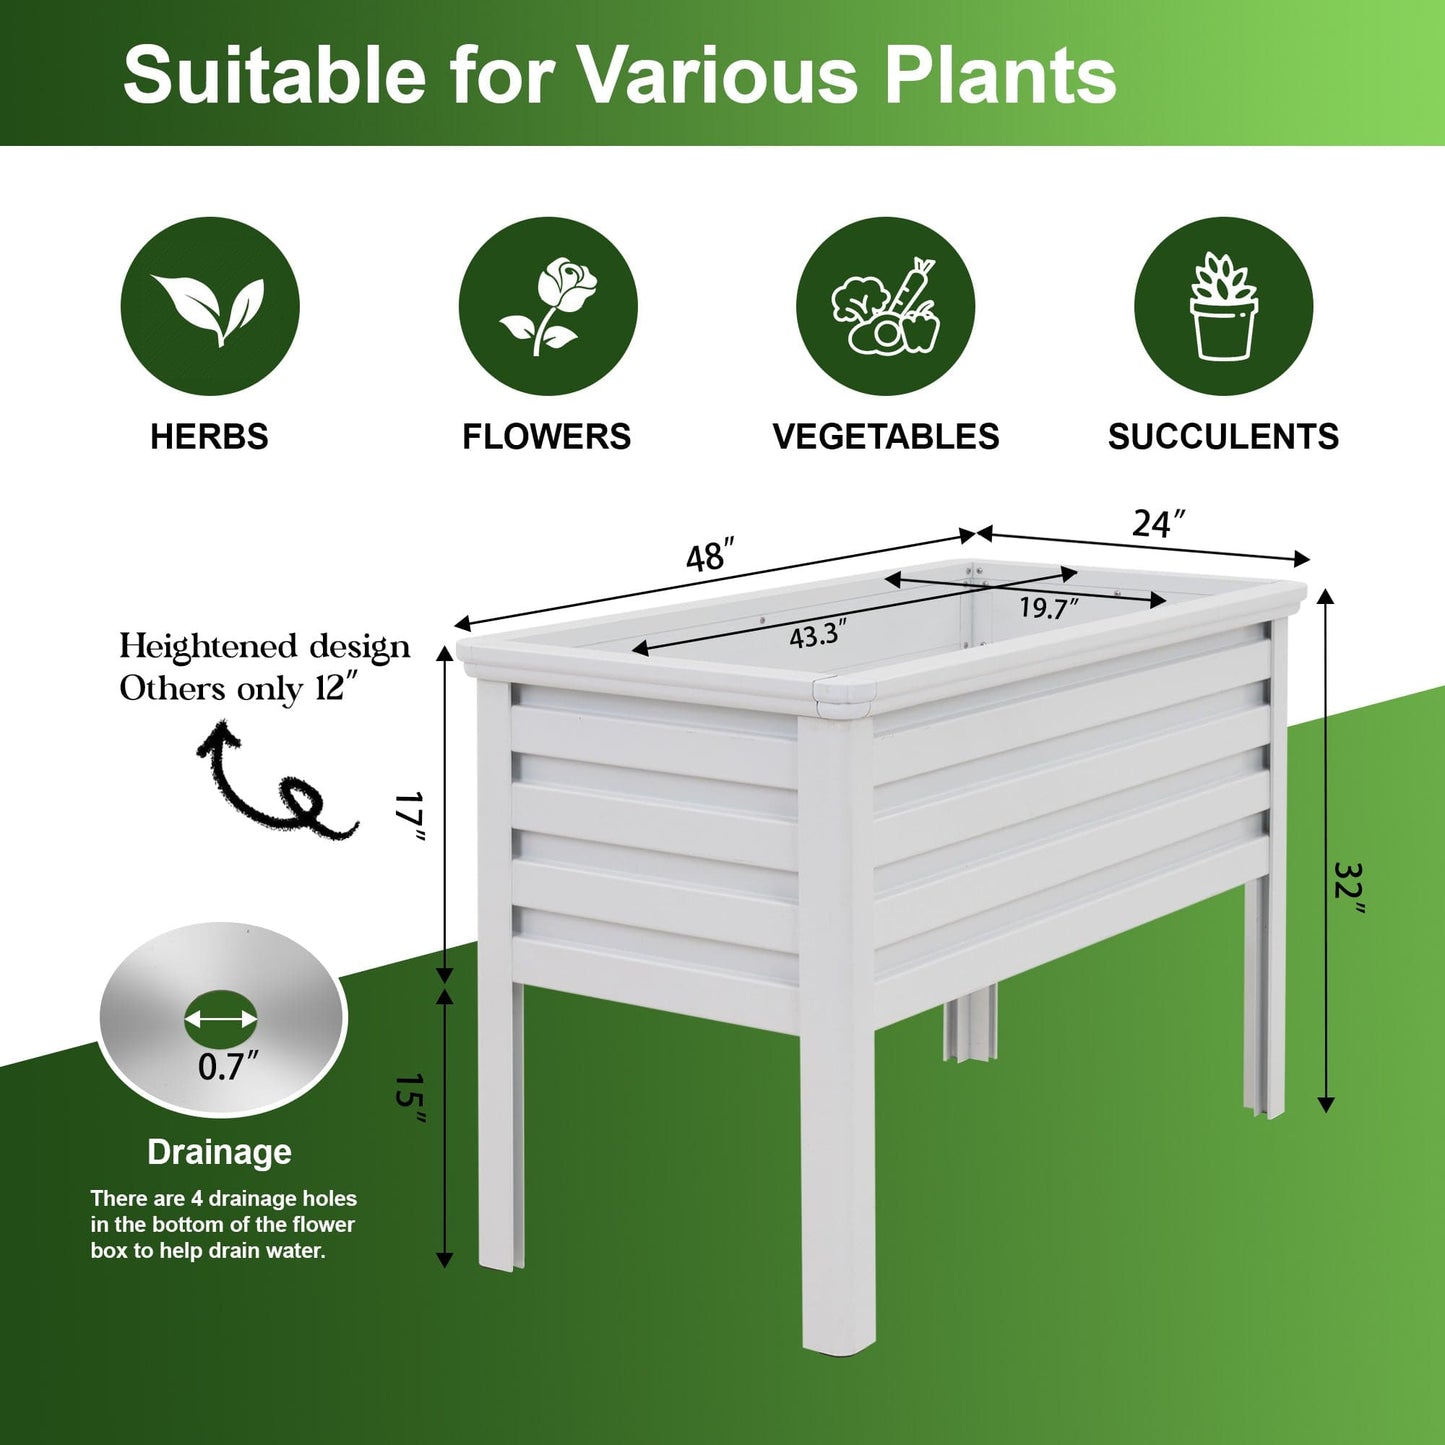 Artigwall® 4 Feet Width Big Aluminum Raised Garden Bed Planter Box